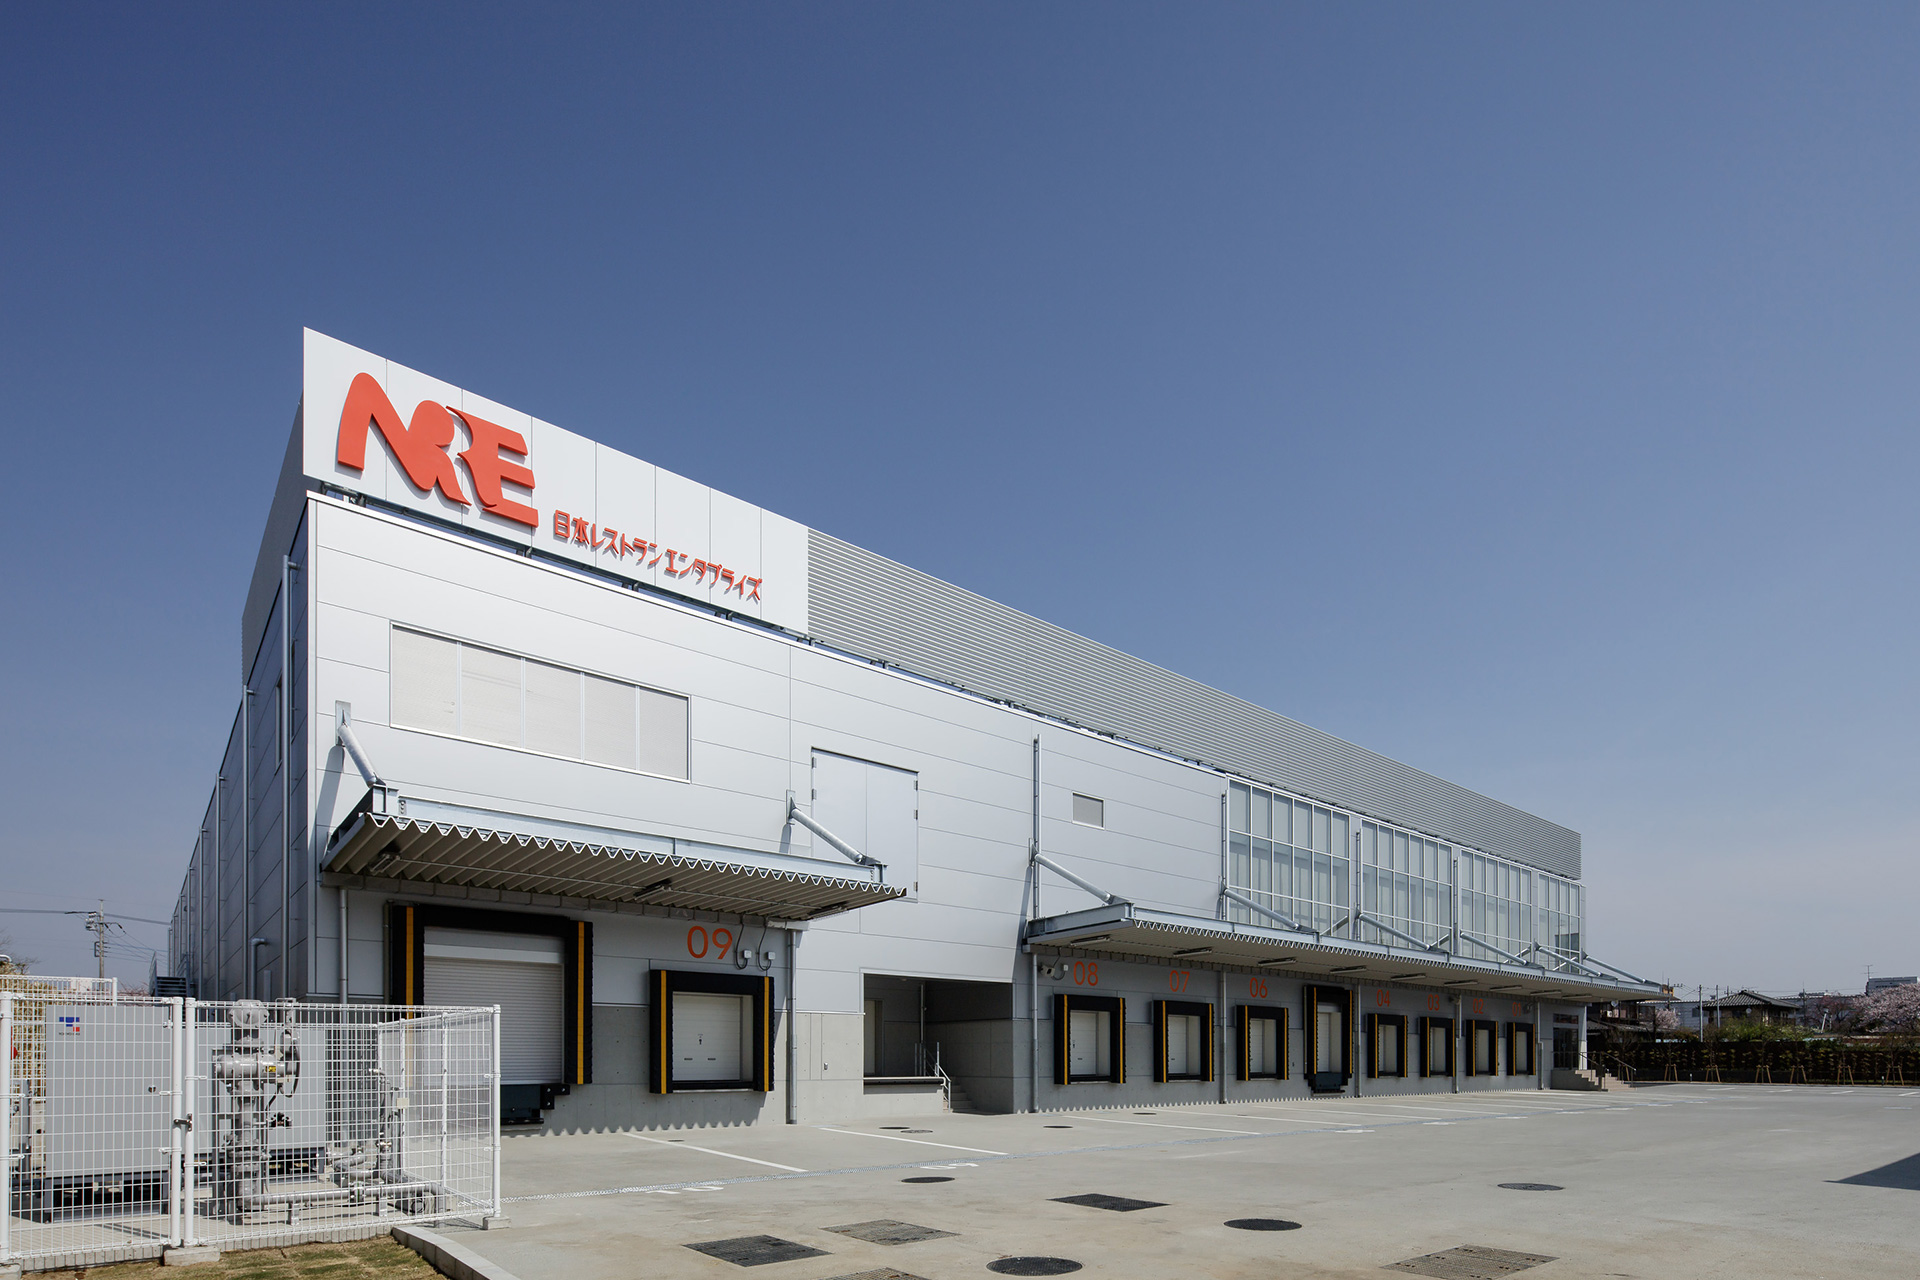 NRE西浦和工場新築工事のサムネイル画像です